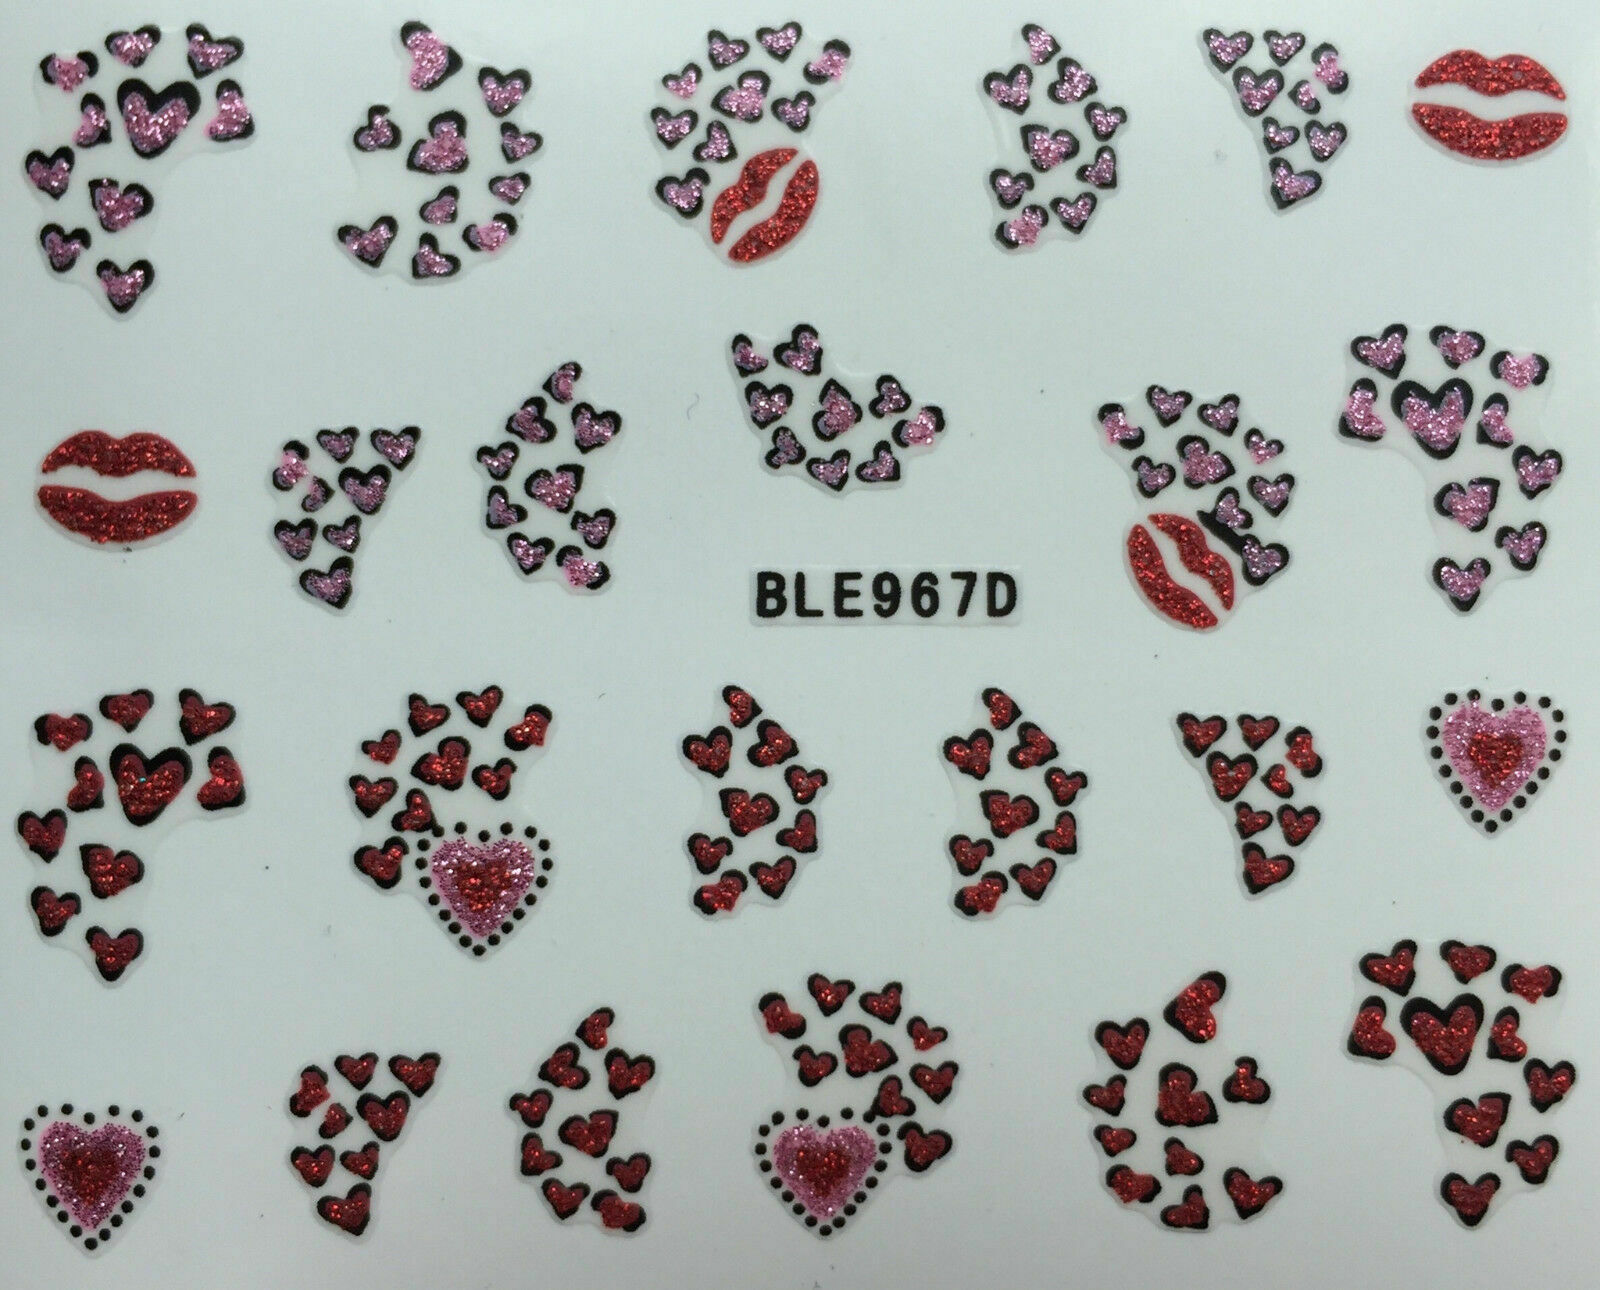 Nail Art 3D Glitter Decal Stickers Heart Tips Lips Glittery BLE967D